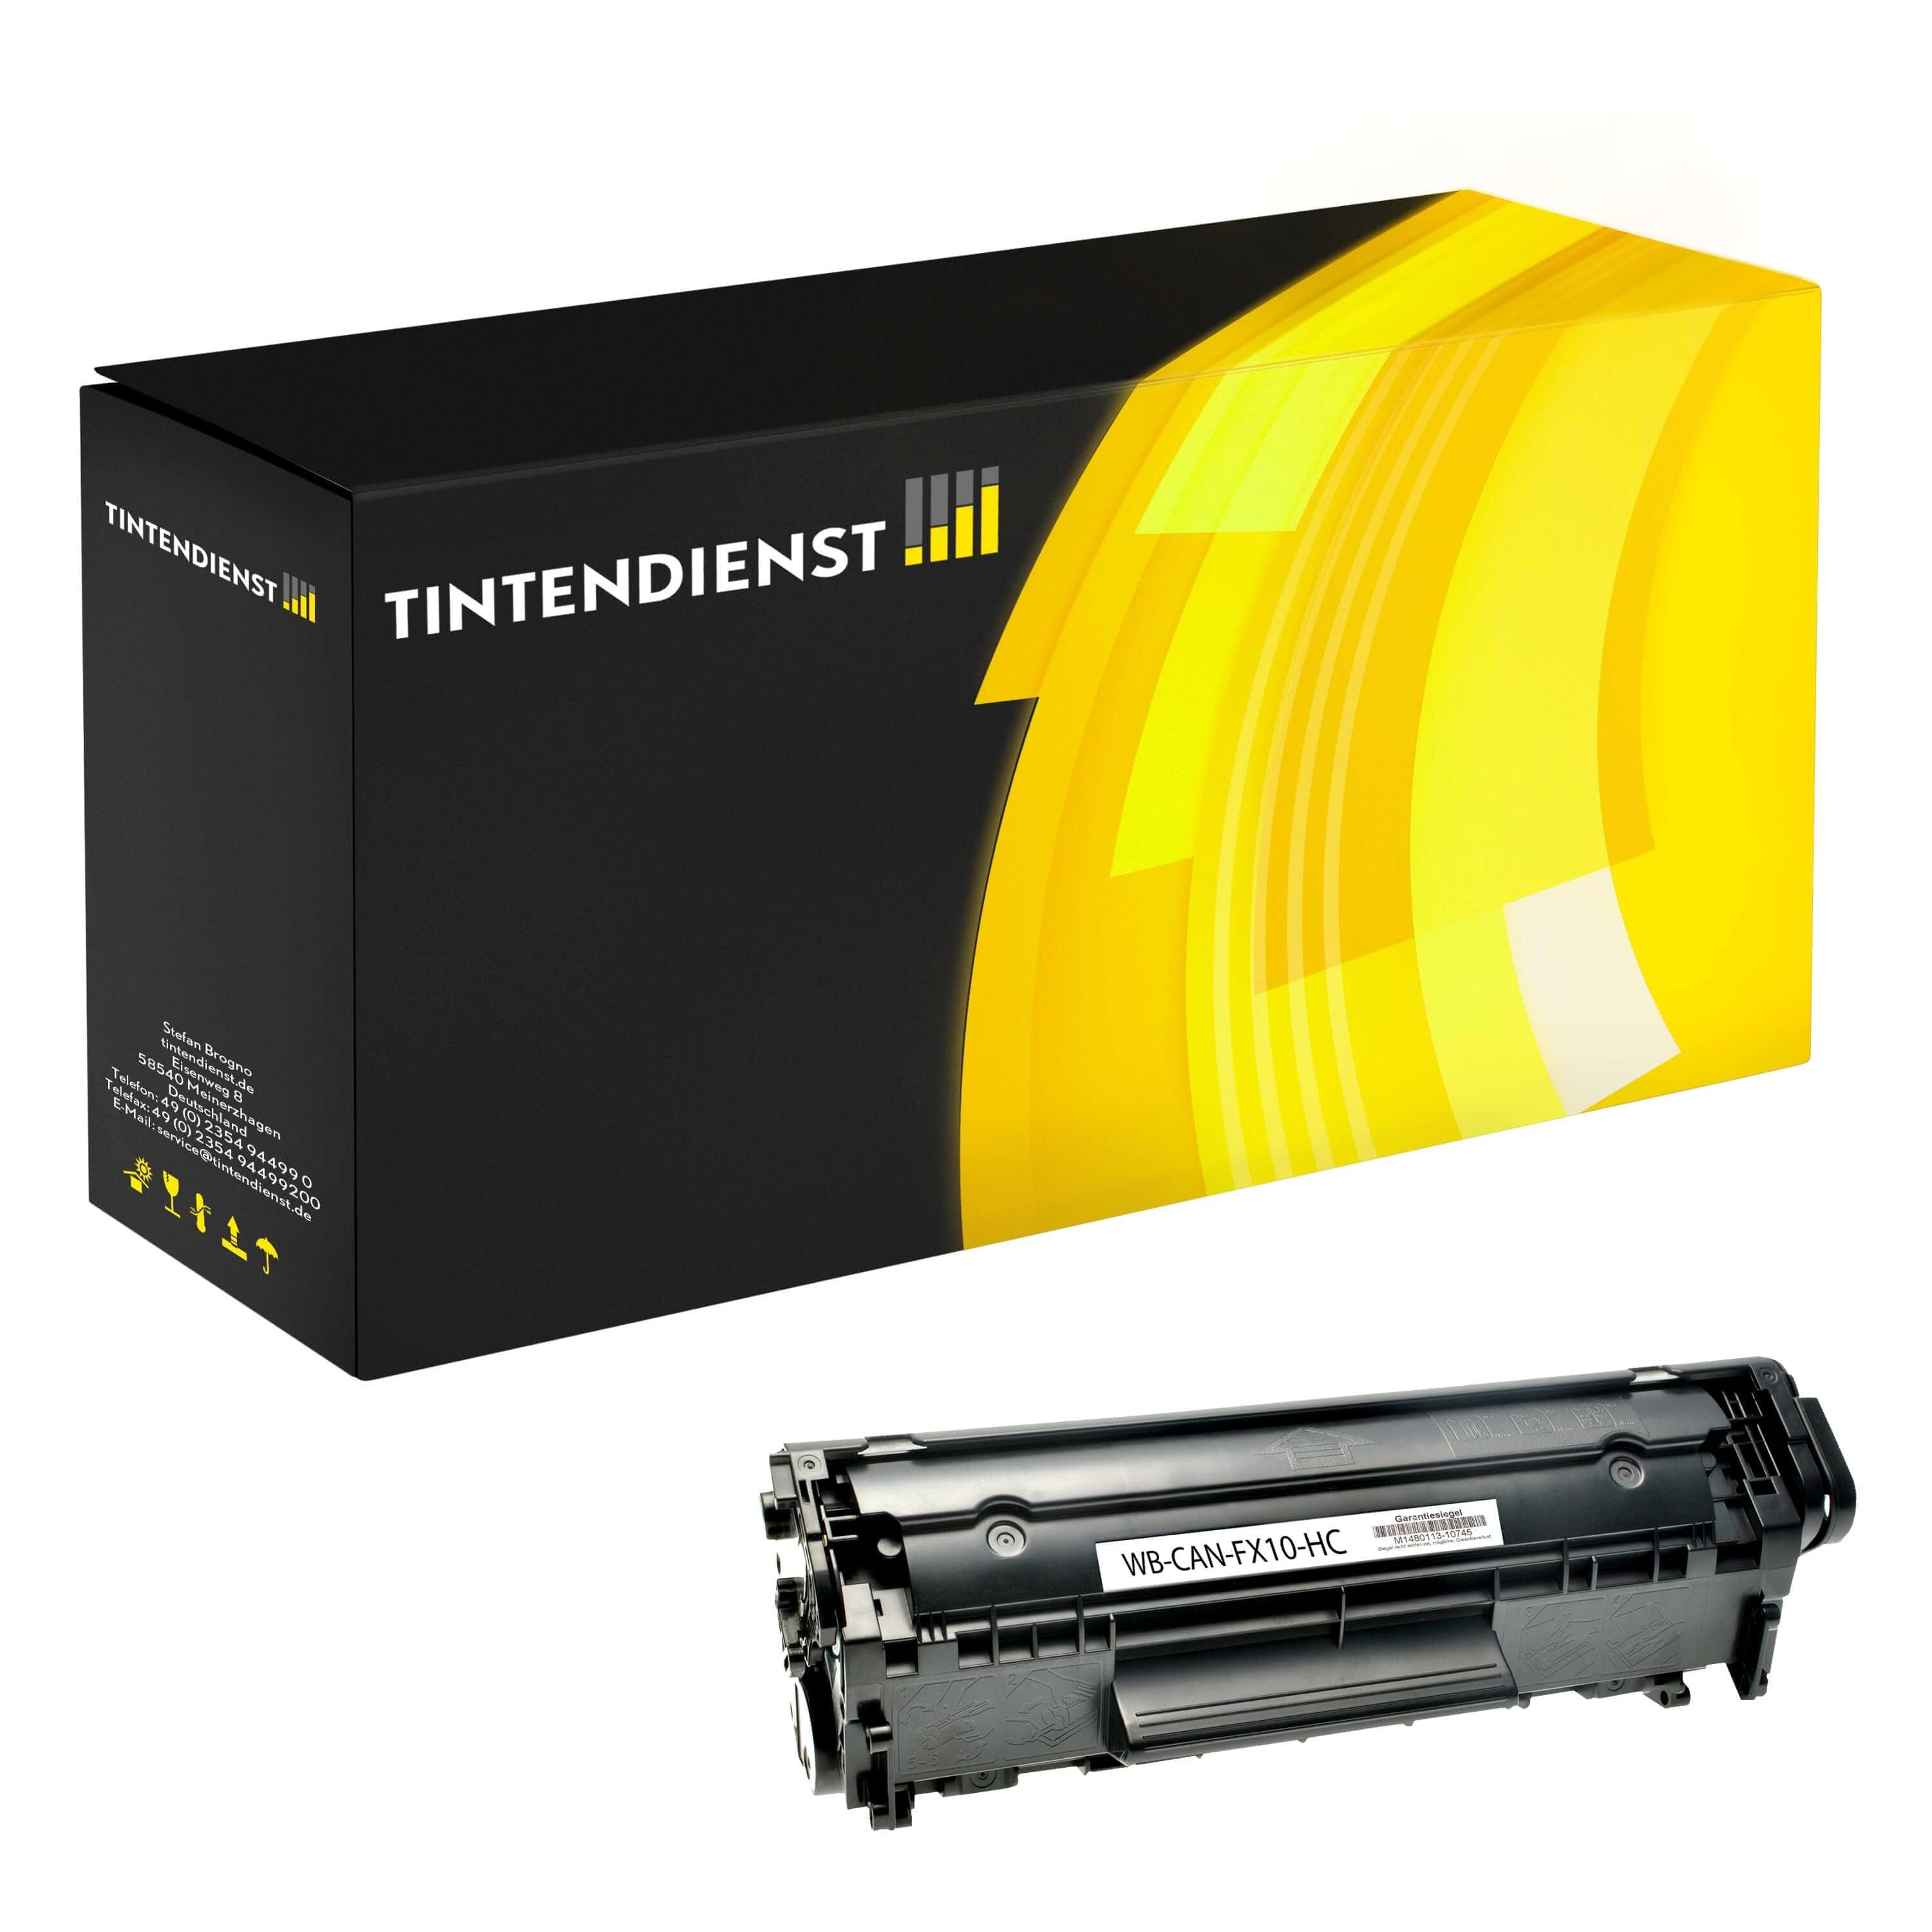 Toner kompatibel für Canon i-SENSYS Fax L 100 (0263B002 / FX-10) Schwarz XL